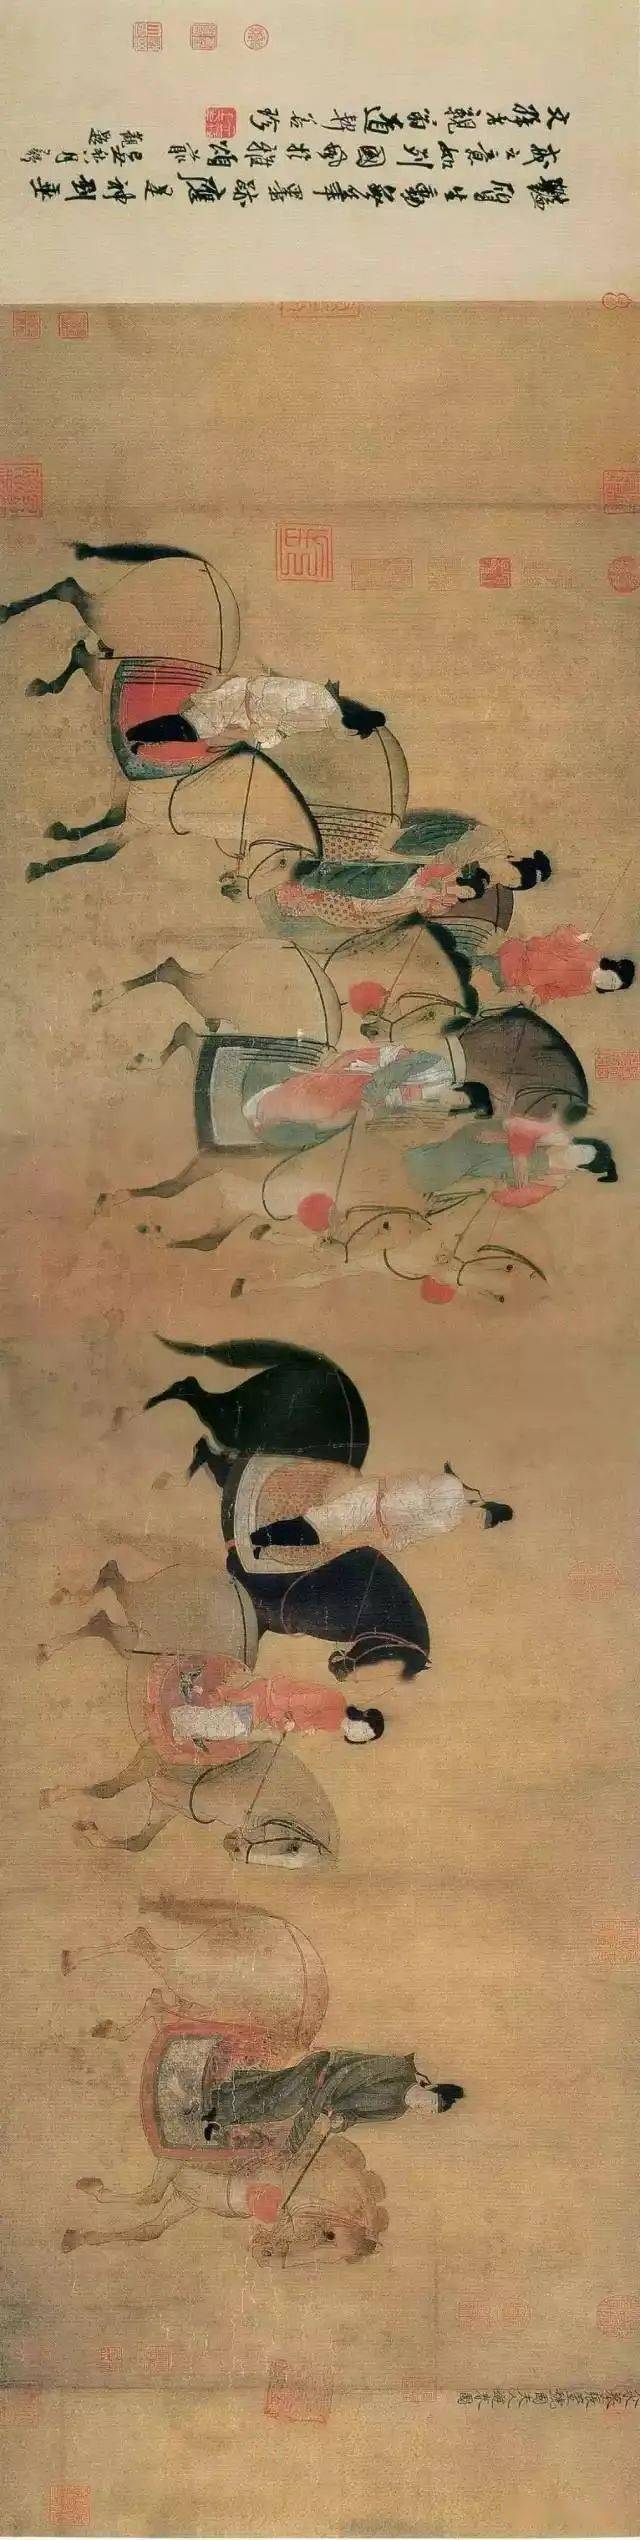 《步辇图》《步辇图》,北京故宫博物院馆藏珍品.绢本,设色,纵38.